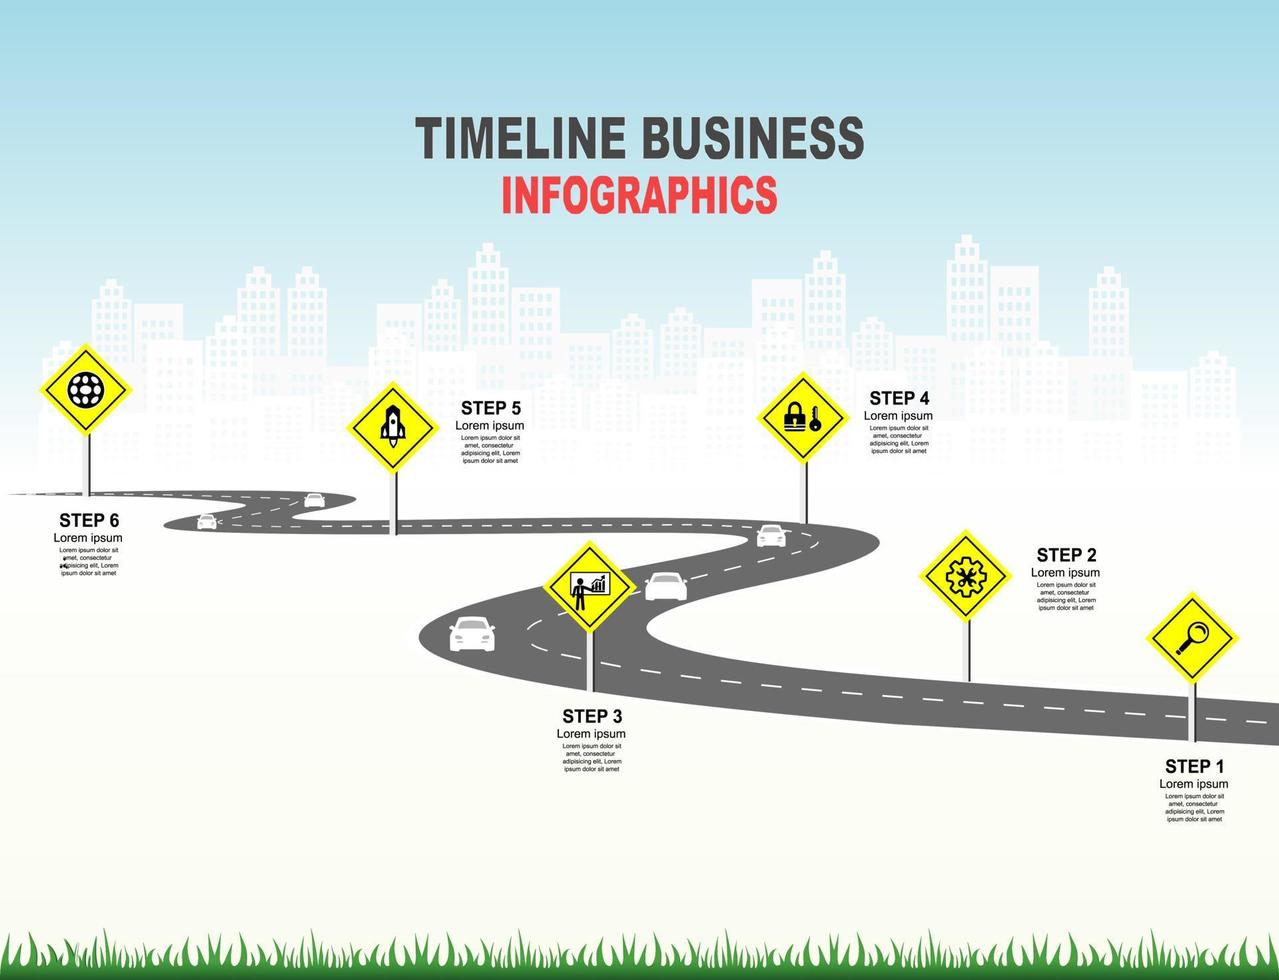 Vektorvorlage Infografik Zeitleiste der Geschäftstätigkeit mit Flaggen und Platzhaltern auf kurvigen Straßen. Symbole, Schritte für eine erfolgreiche Geschäftsplanung geeignet für Werbung und Präsentationen. vektor